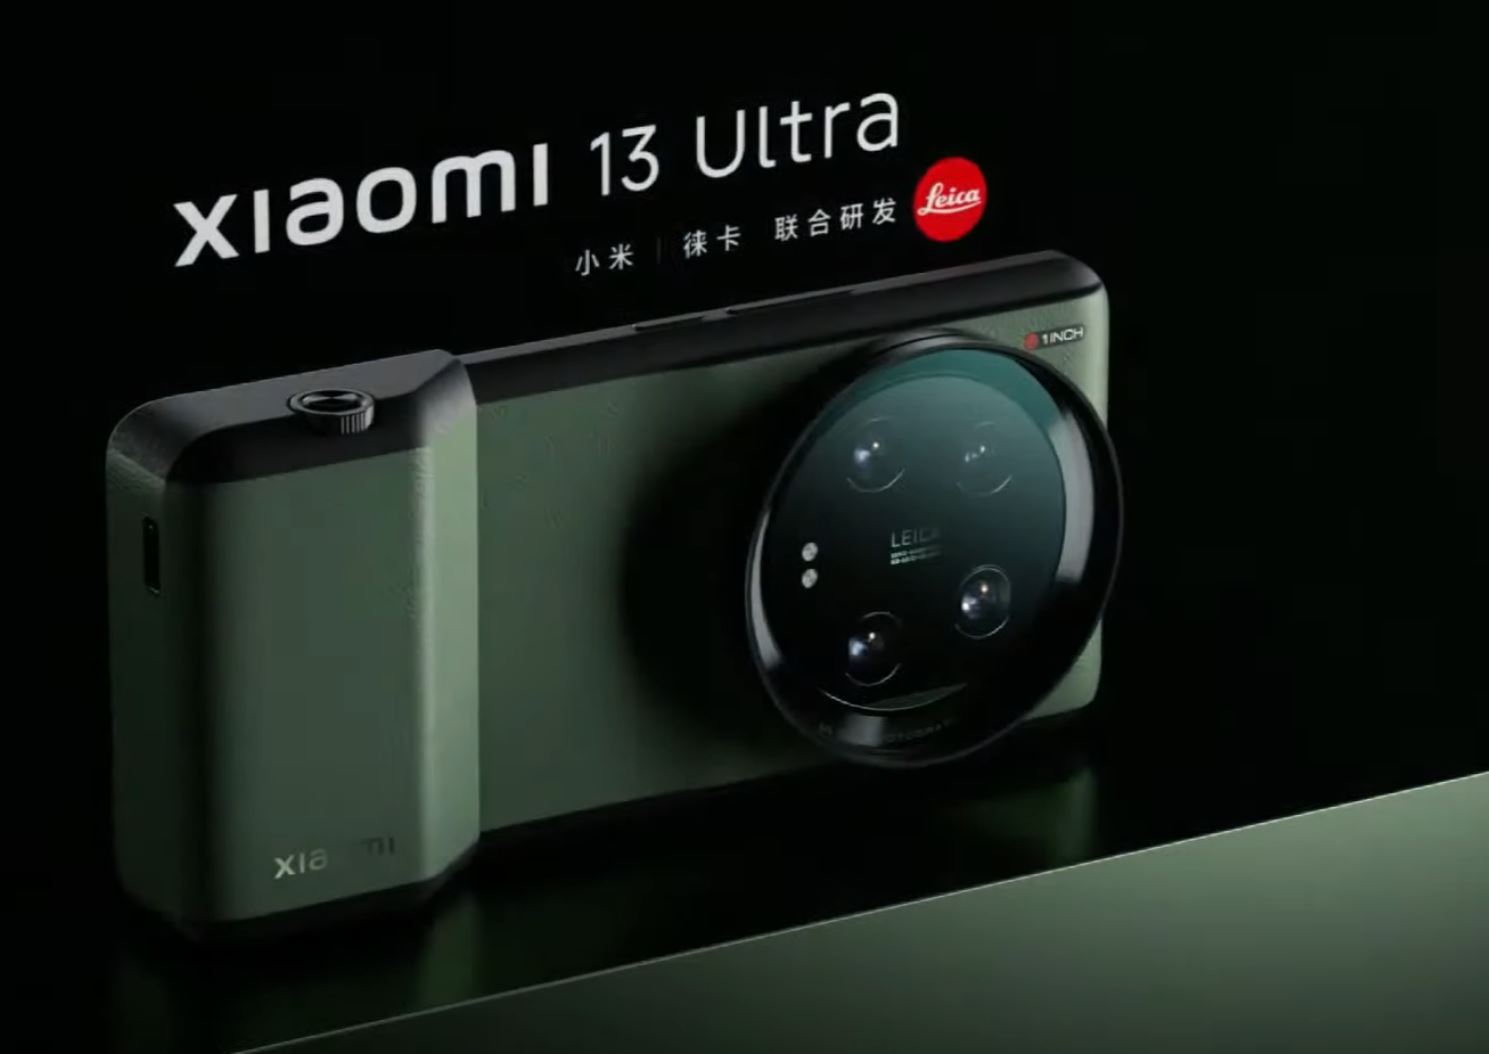 مراجعة شاملة لهاتف Xiaomi 13 Ultra الجديد: كل ما تحتاج لمعرفته عن الكاميرا الجديدة وأداء النظام